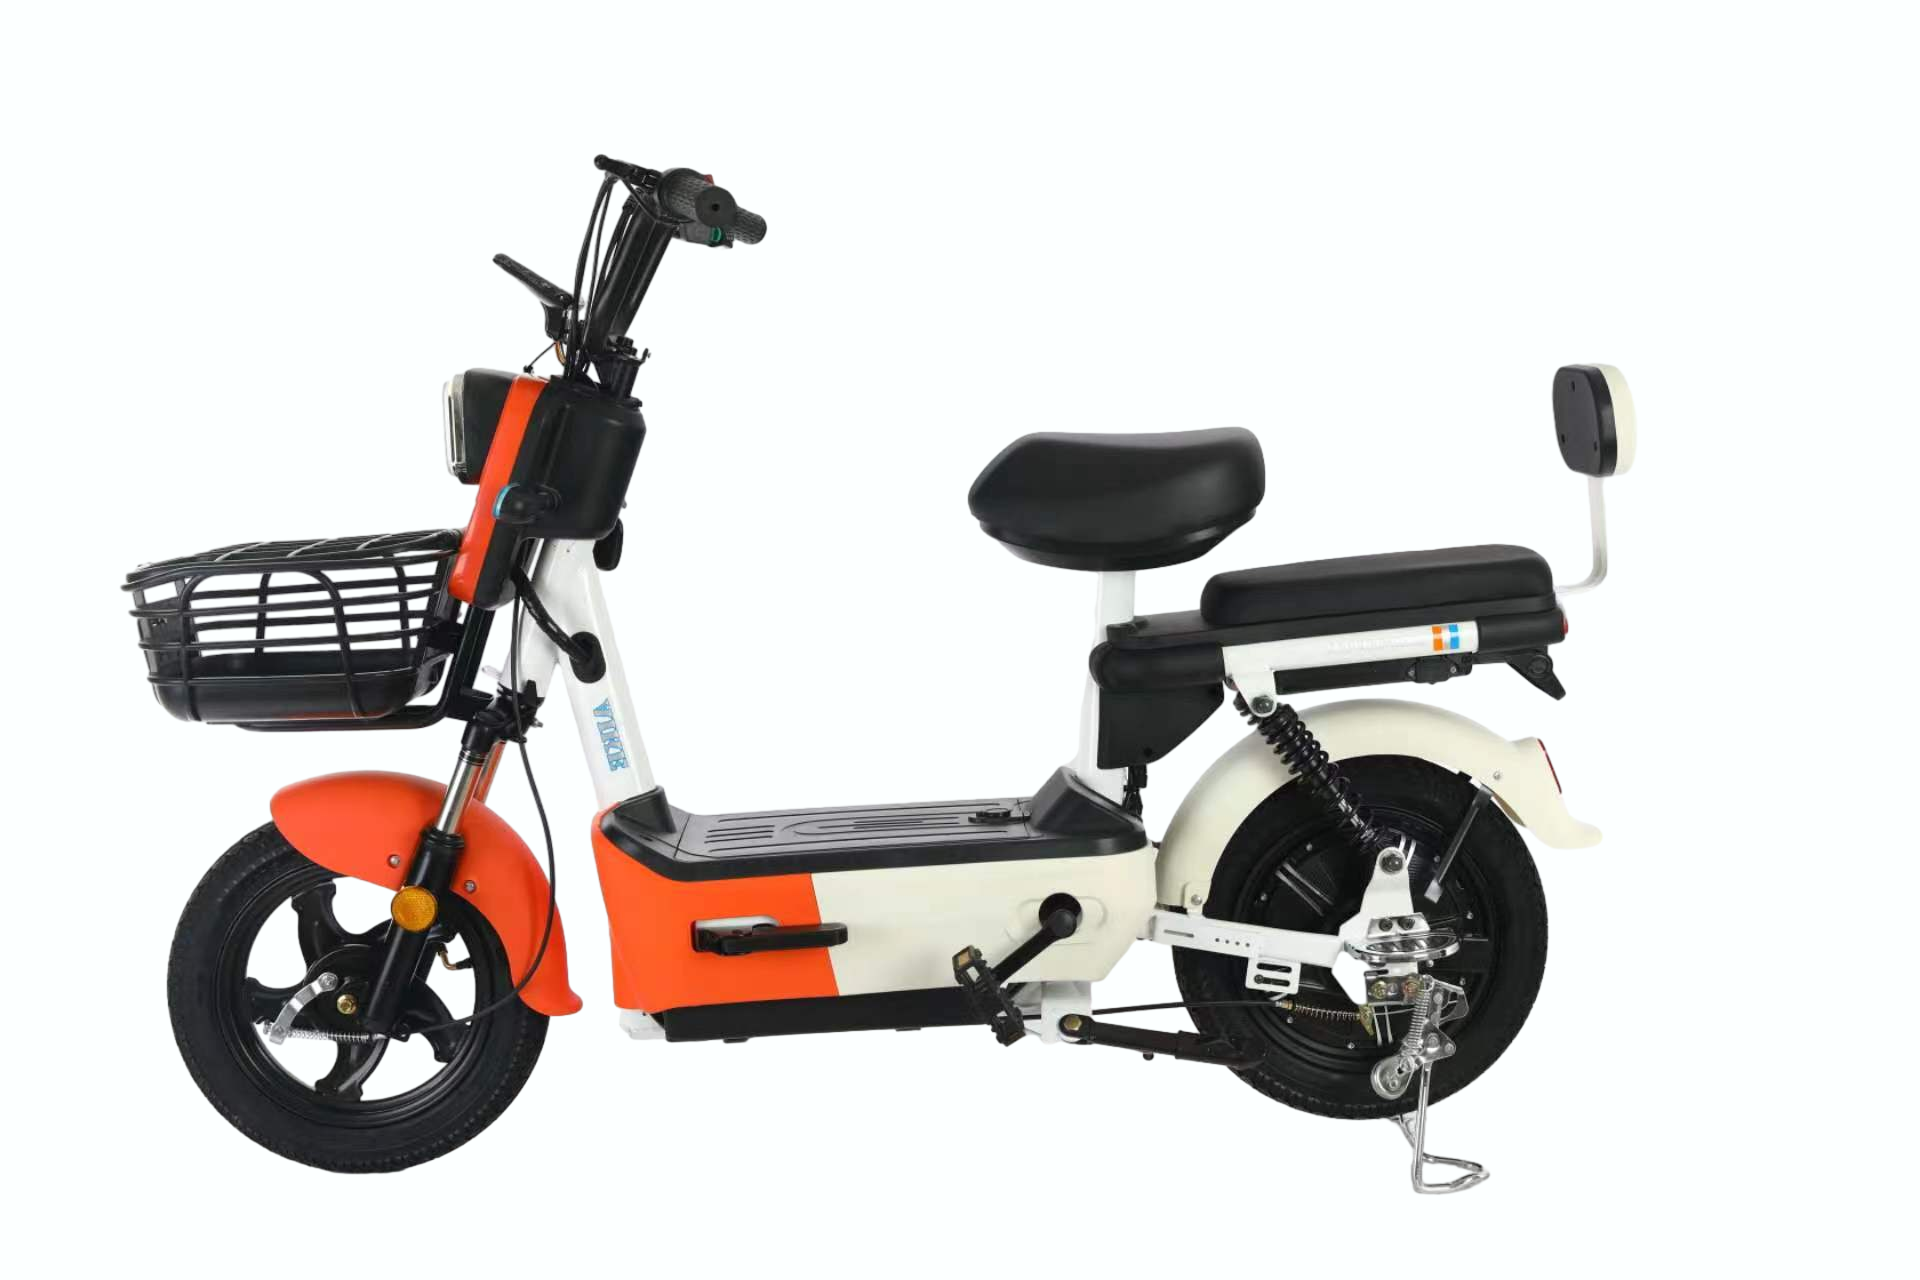 2023 دراجات نارية كهربائية من نوع سيتي كوكو الجديدة سكوترات كهربائية للمدينة دراجة كهربائية للمدينة سكوتر كهربائي